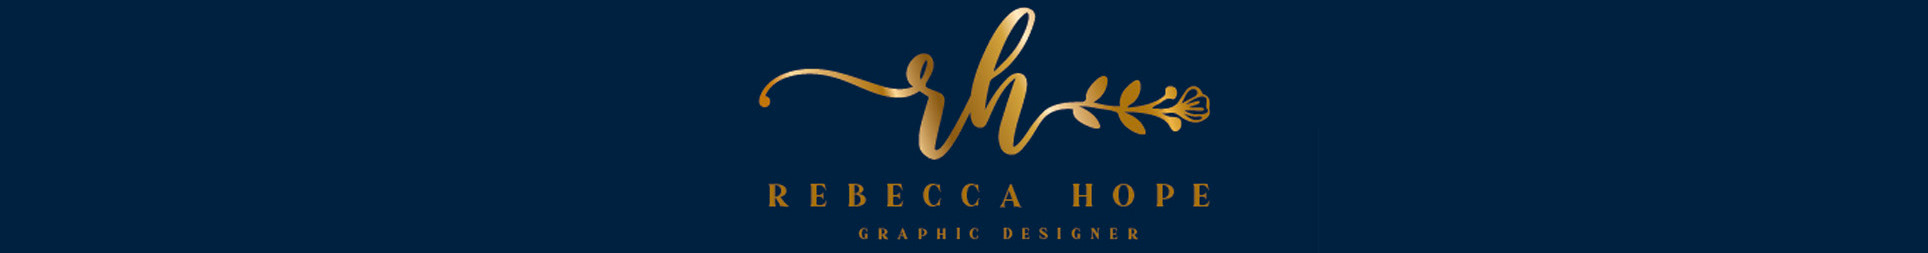 Rebecca Hope's profile banner